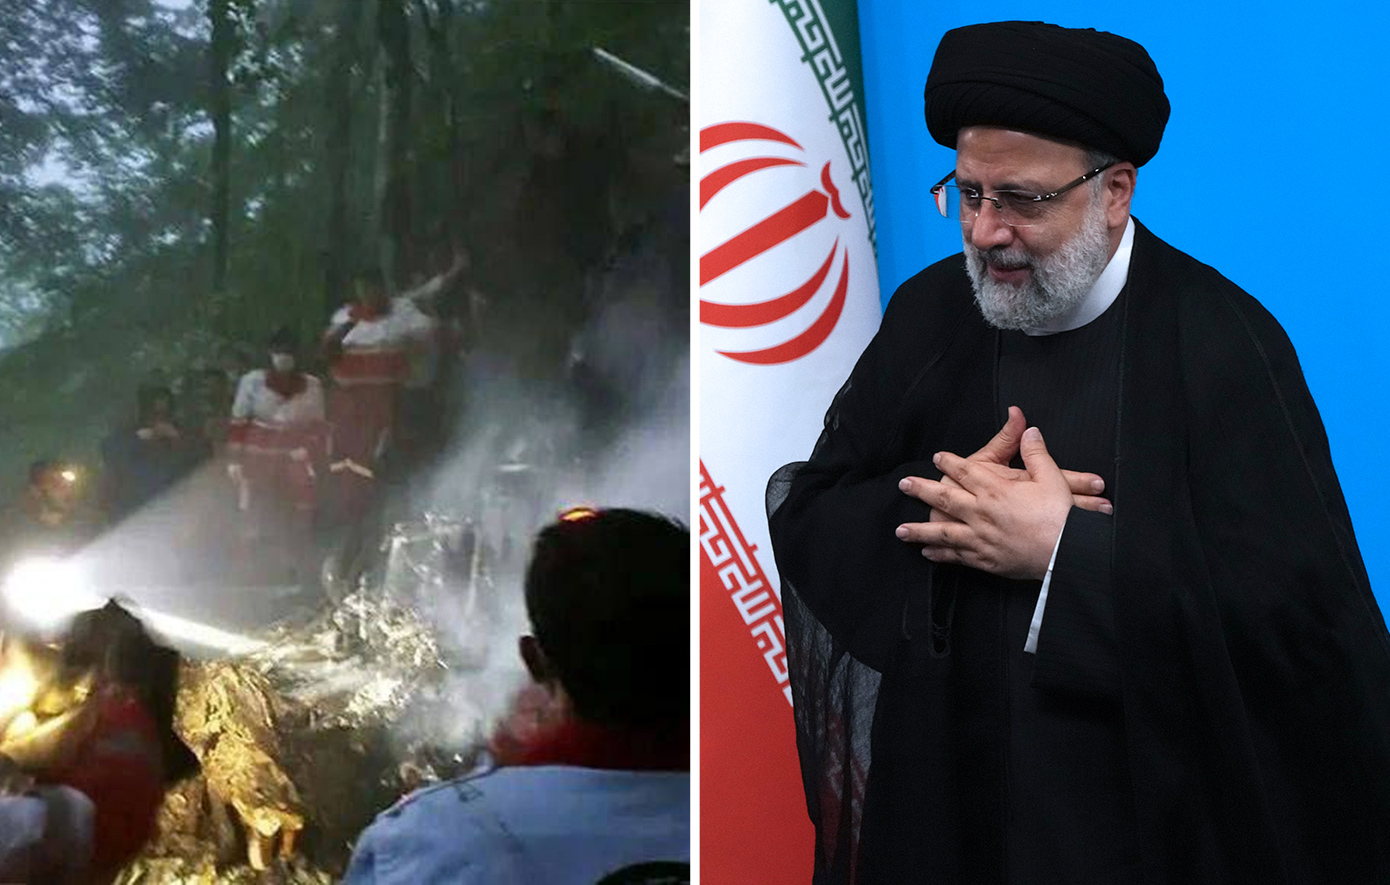 Νεκροί ο πρόεδρος του Ιράν, Εμπραχίμ Ραϊσί, και ο υπουργός Εξωτερικών μετά τη συντριβή του ελικοπτέρου όπου επέβαιναν